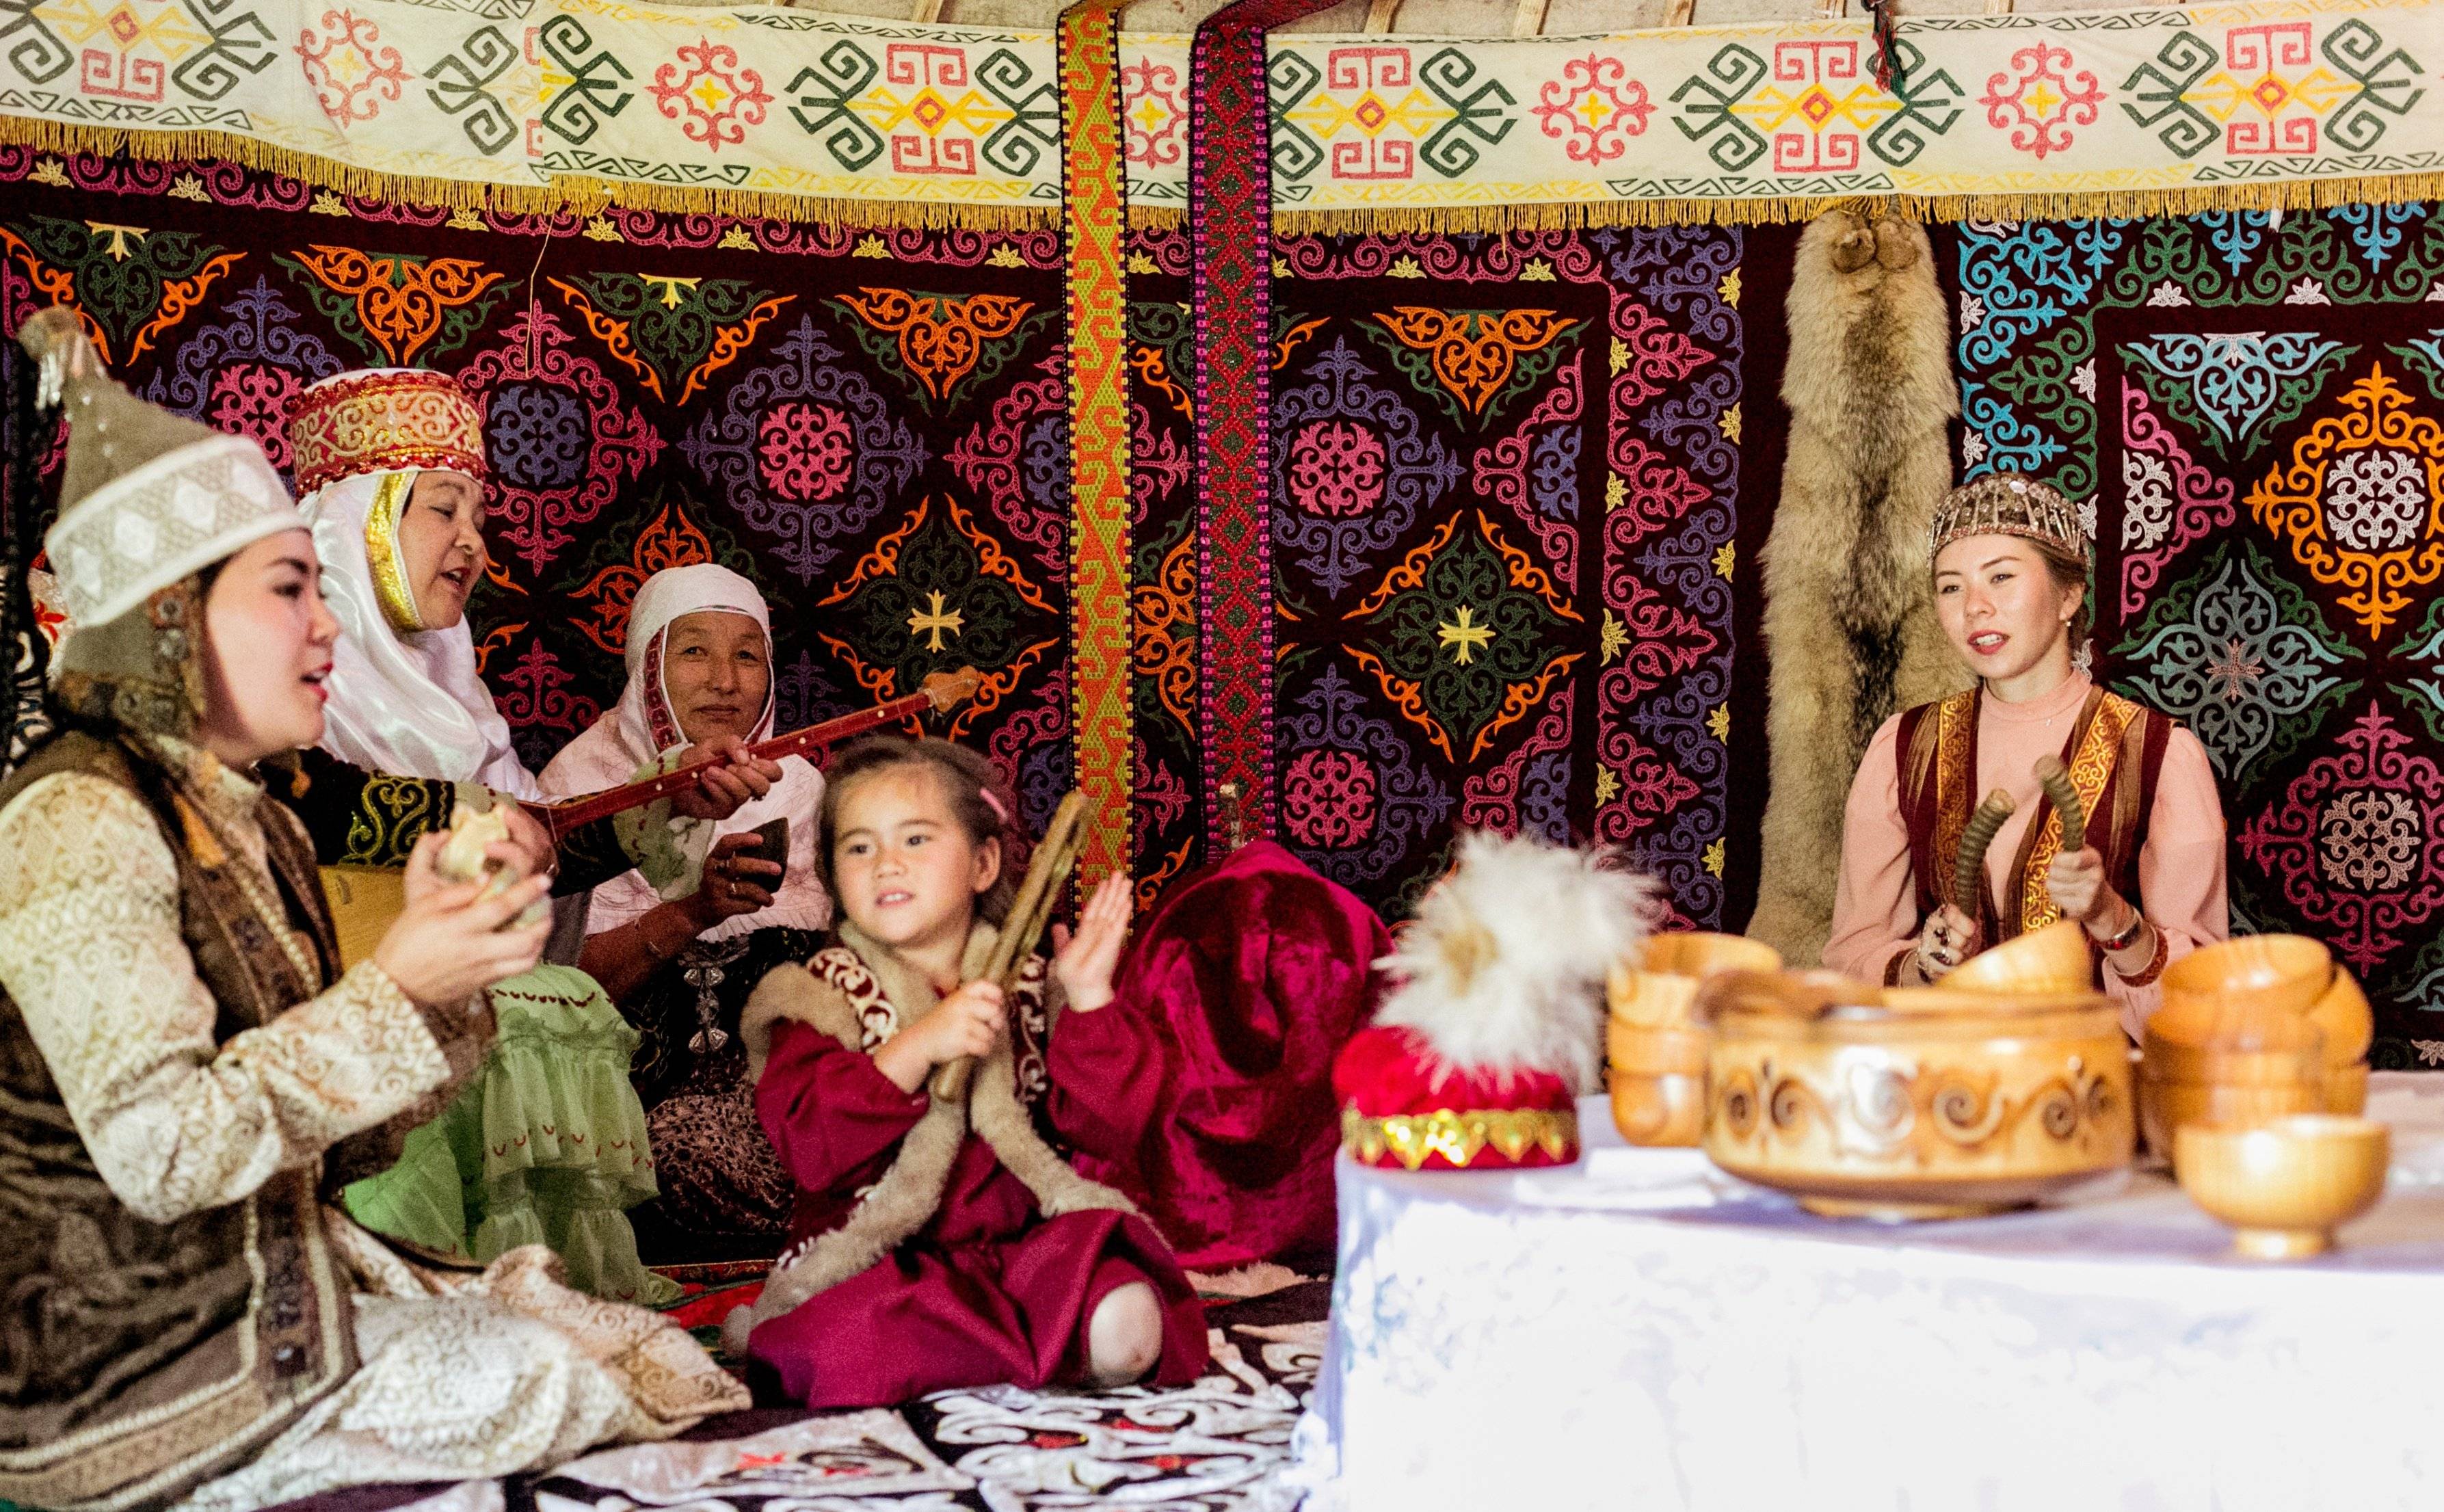 Visita al pueblo de los Hunos, Inmersión en la cultura kazaja.  Traslada a Turquestán en Tren.